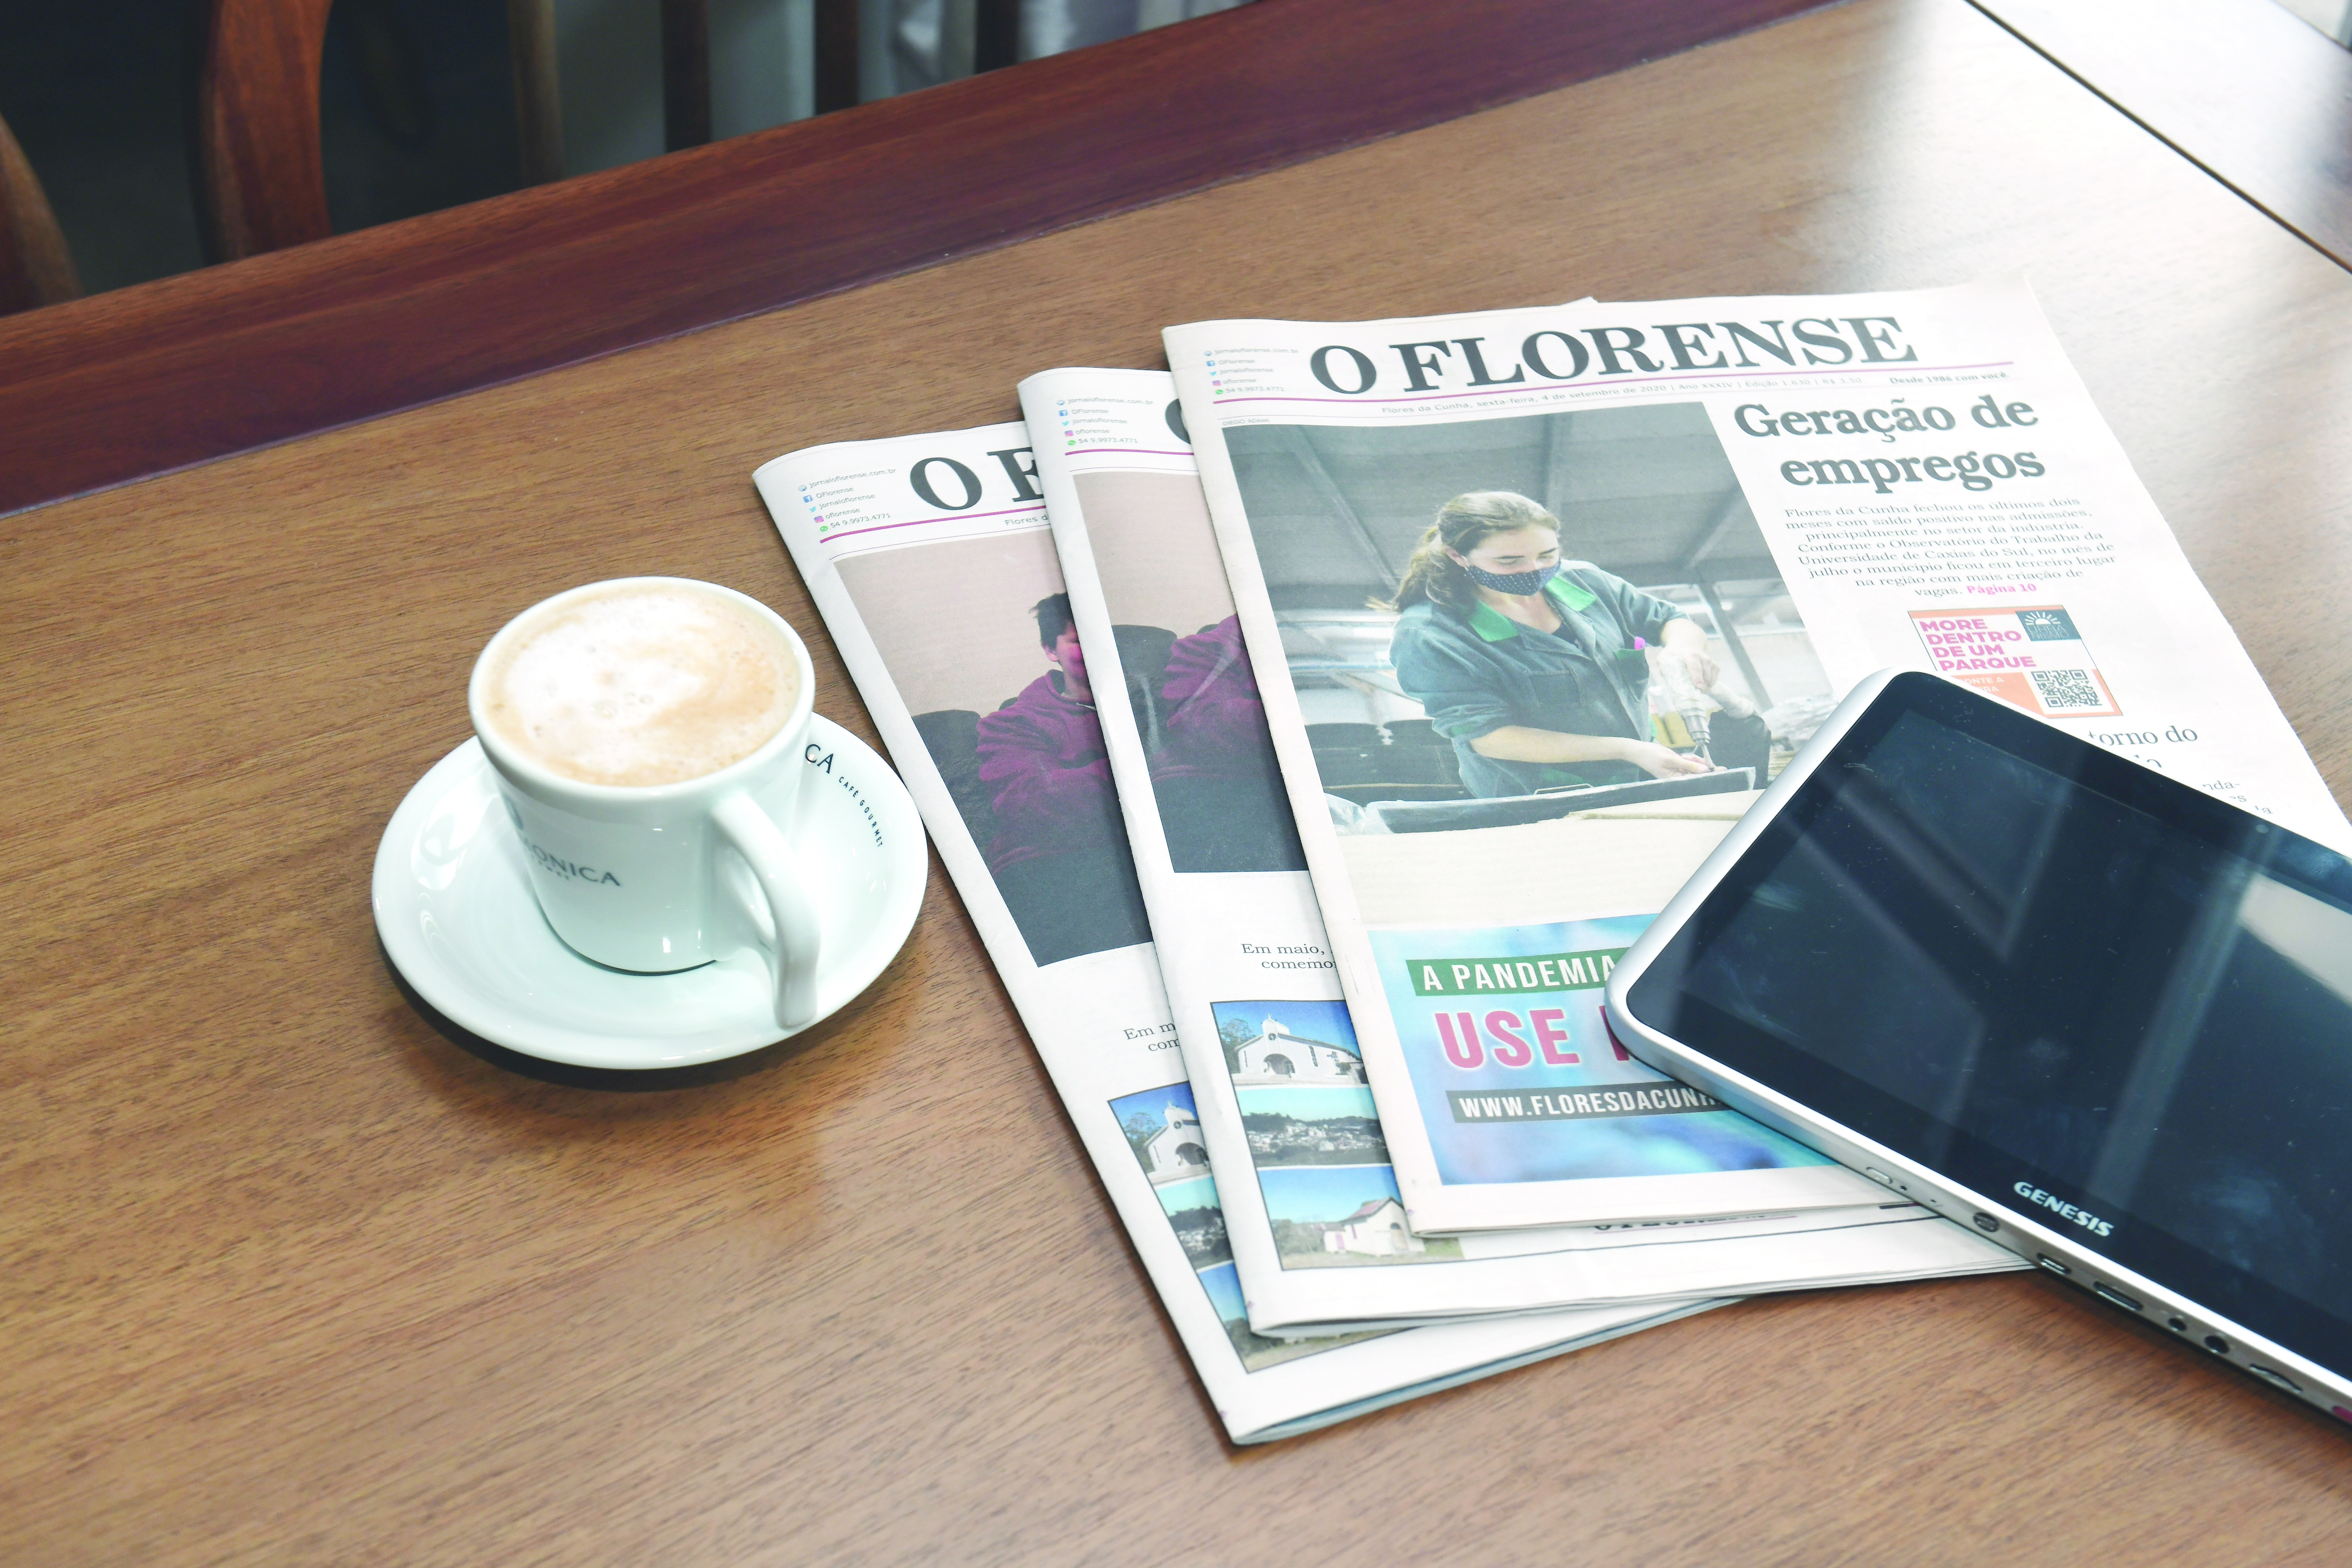 Os fatos diários são publicados nas versões digitais de O Florense, ao jornal impresso cabe notícias com mais profundidade e relevância para a comunidade.  - LUIZINHO BEBBER/ DIVULGAÇÃO